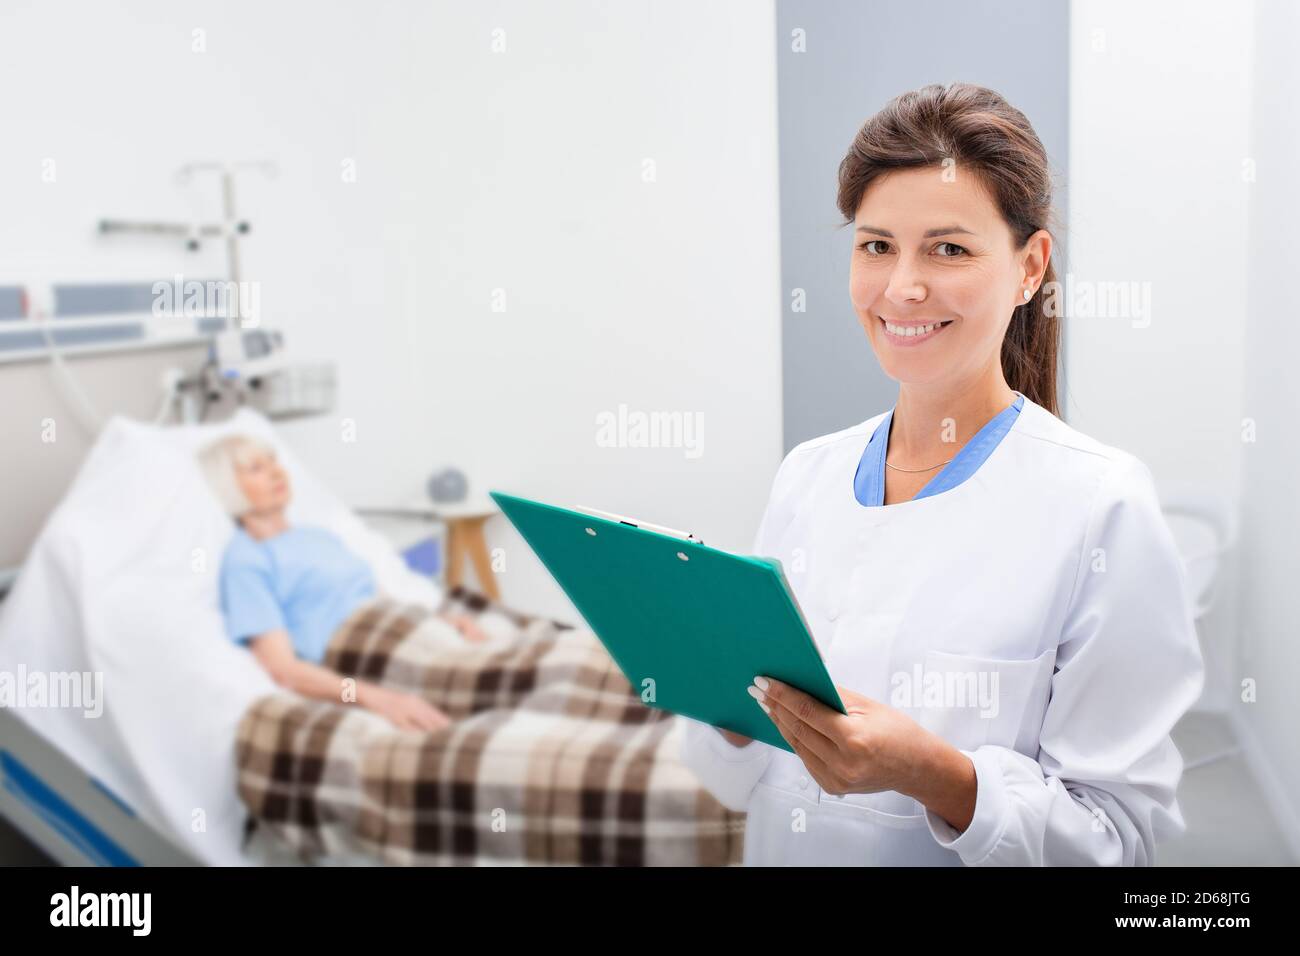 Un médecin souriant tient un dossier médical tout en se tenant dans une salle d'hôpital. Le thérapeute est heureux parce que les tests du patient sont normaux. Dans le fichier backgr Banque D'Images